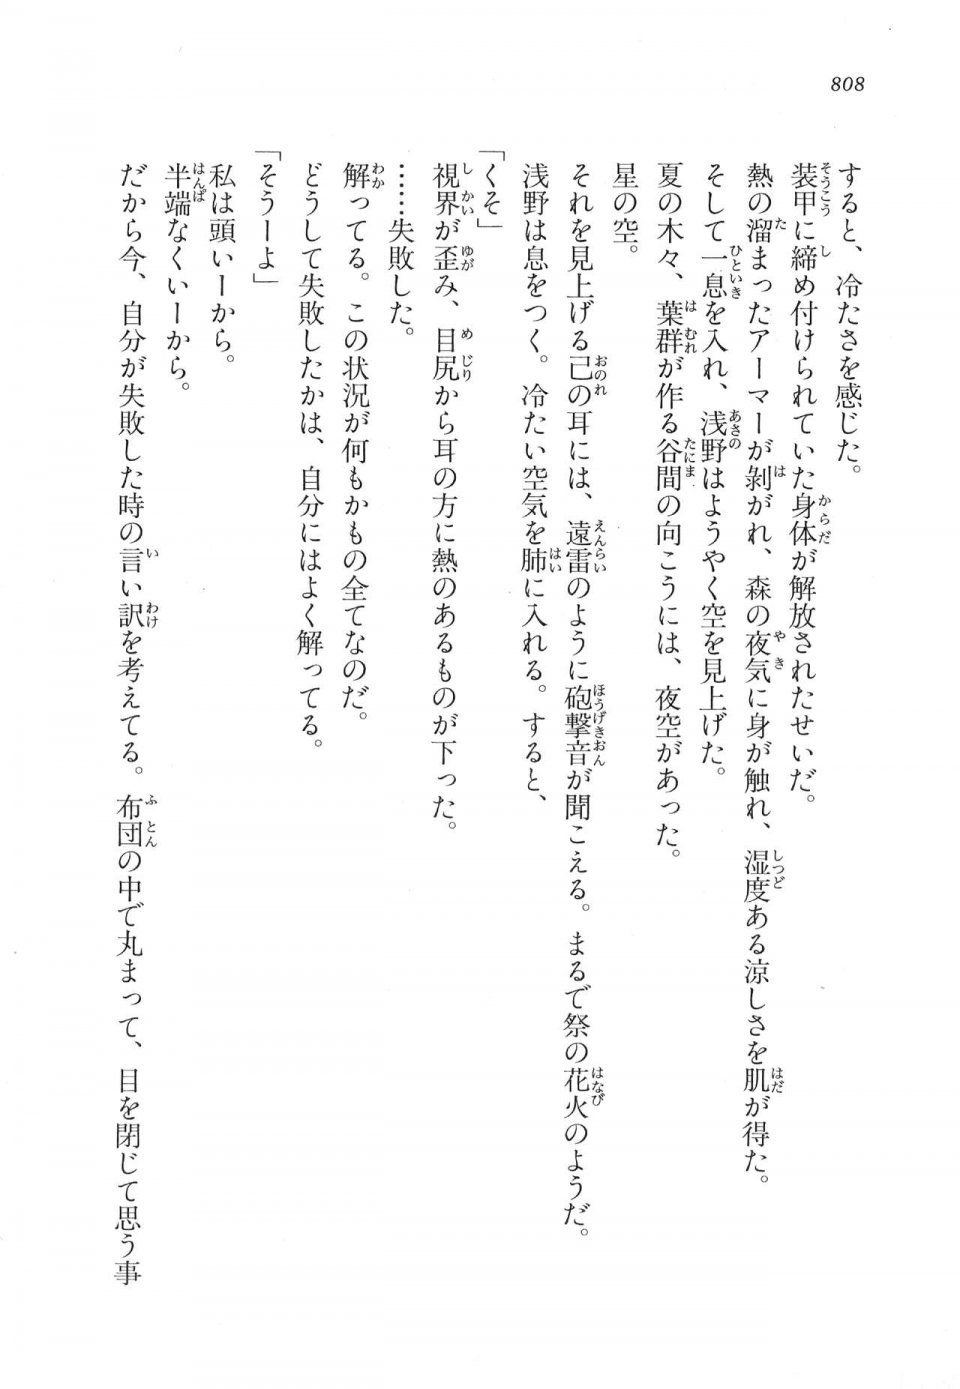 Kyoukai Senjou no Horizon LN Vol 17(7B) - Photo #810